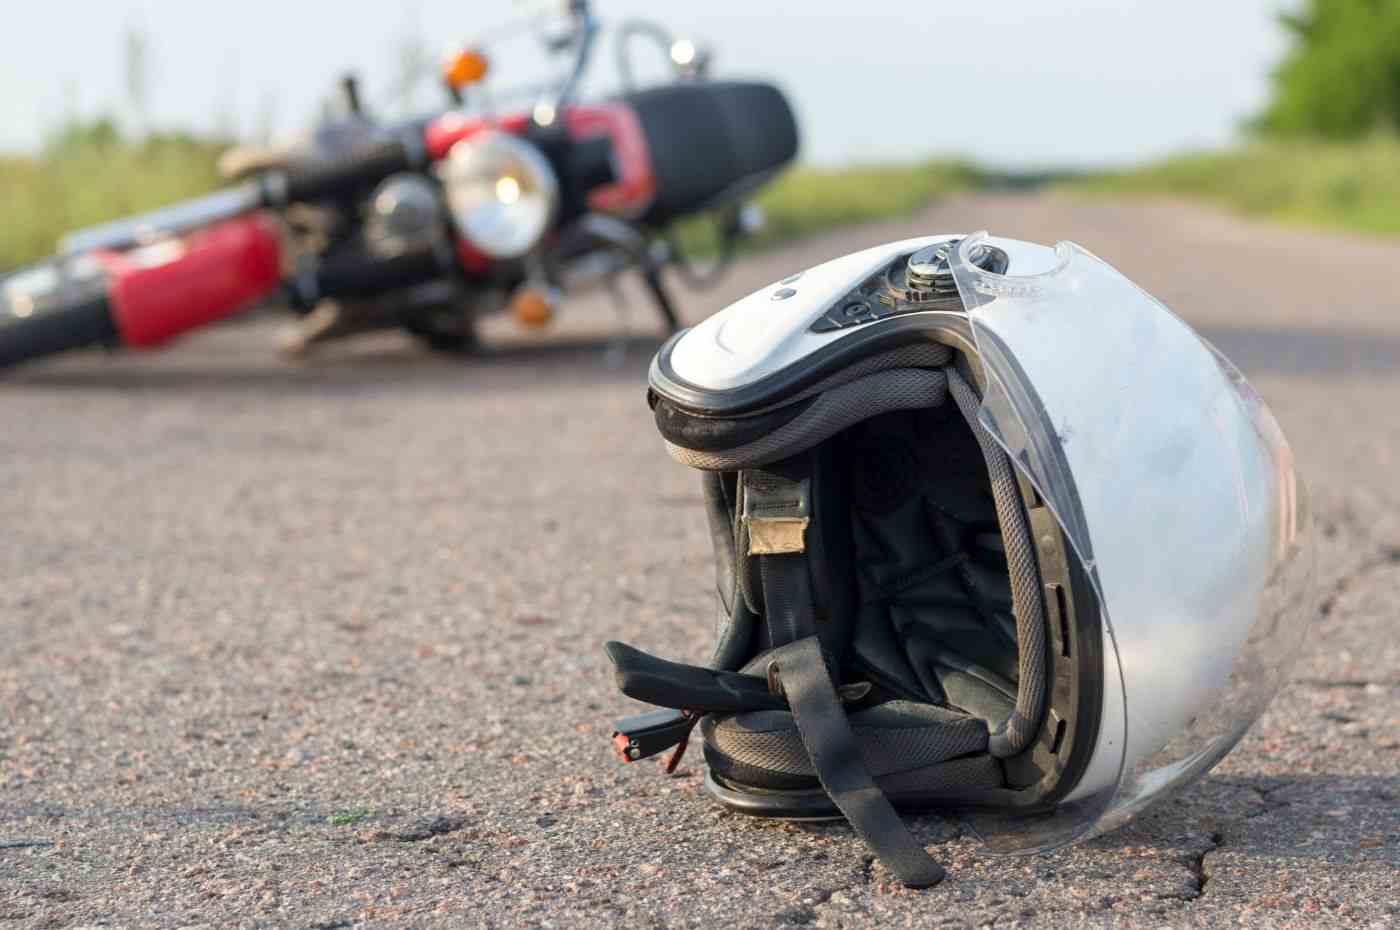 Acidente em Campo Limpo Paulista: capacete de motociclista no chão com moto caída ao fundo em estrada rural.